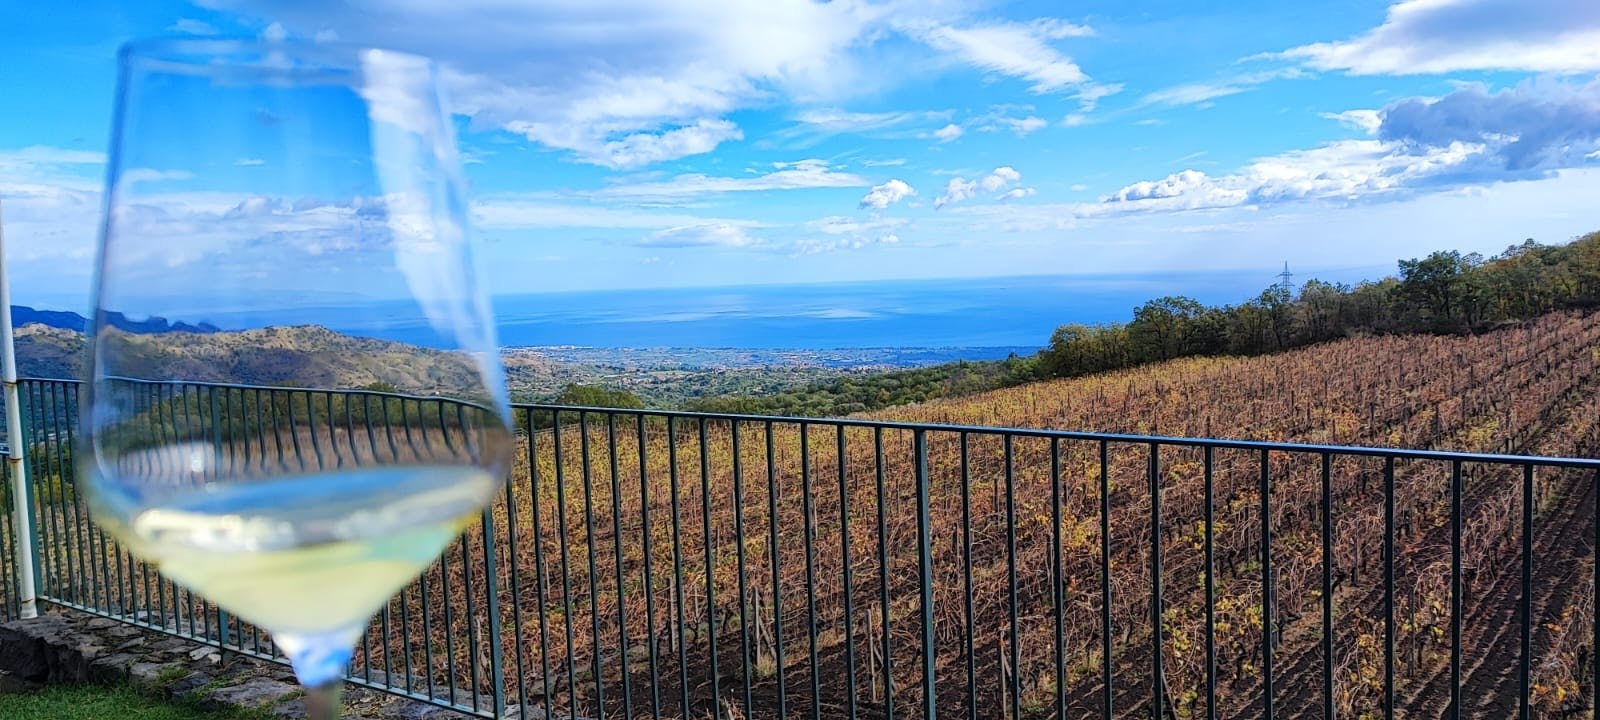 7 degustação de vinhos e comida no Parque Nacional Etna com tour pela vinícola